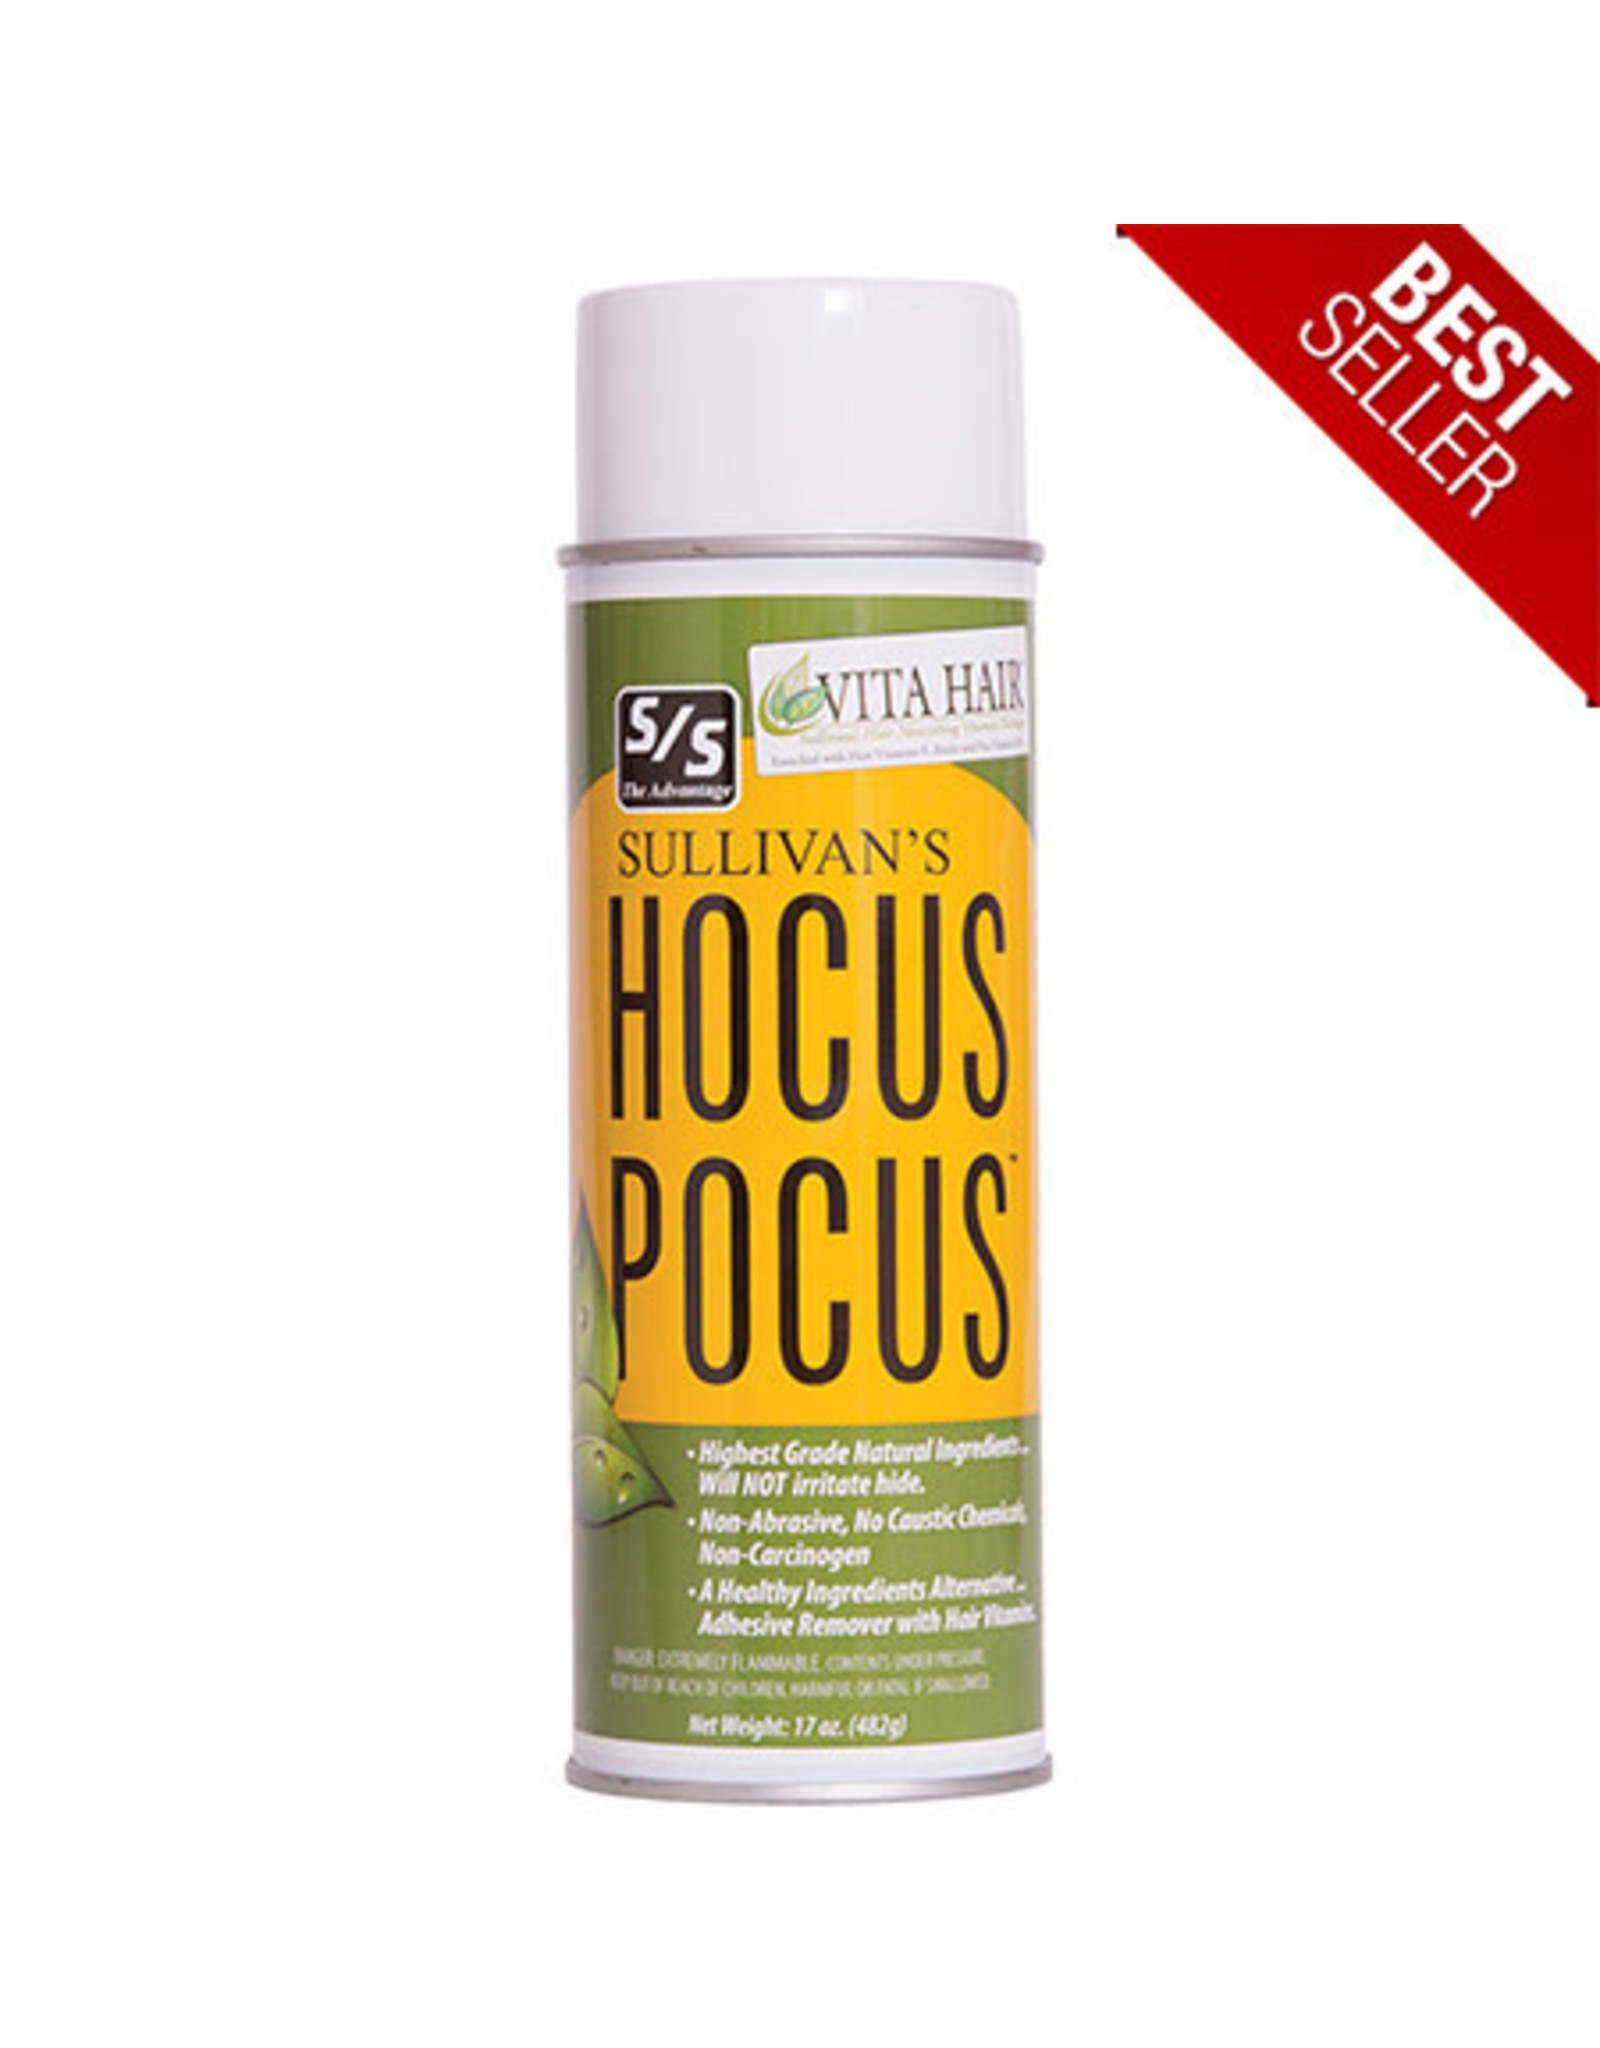 Sullivans Hocus Pocus